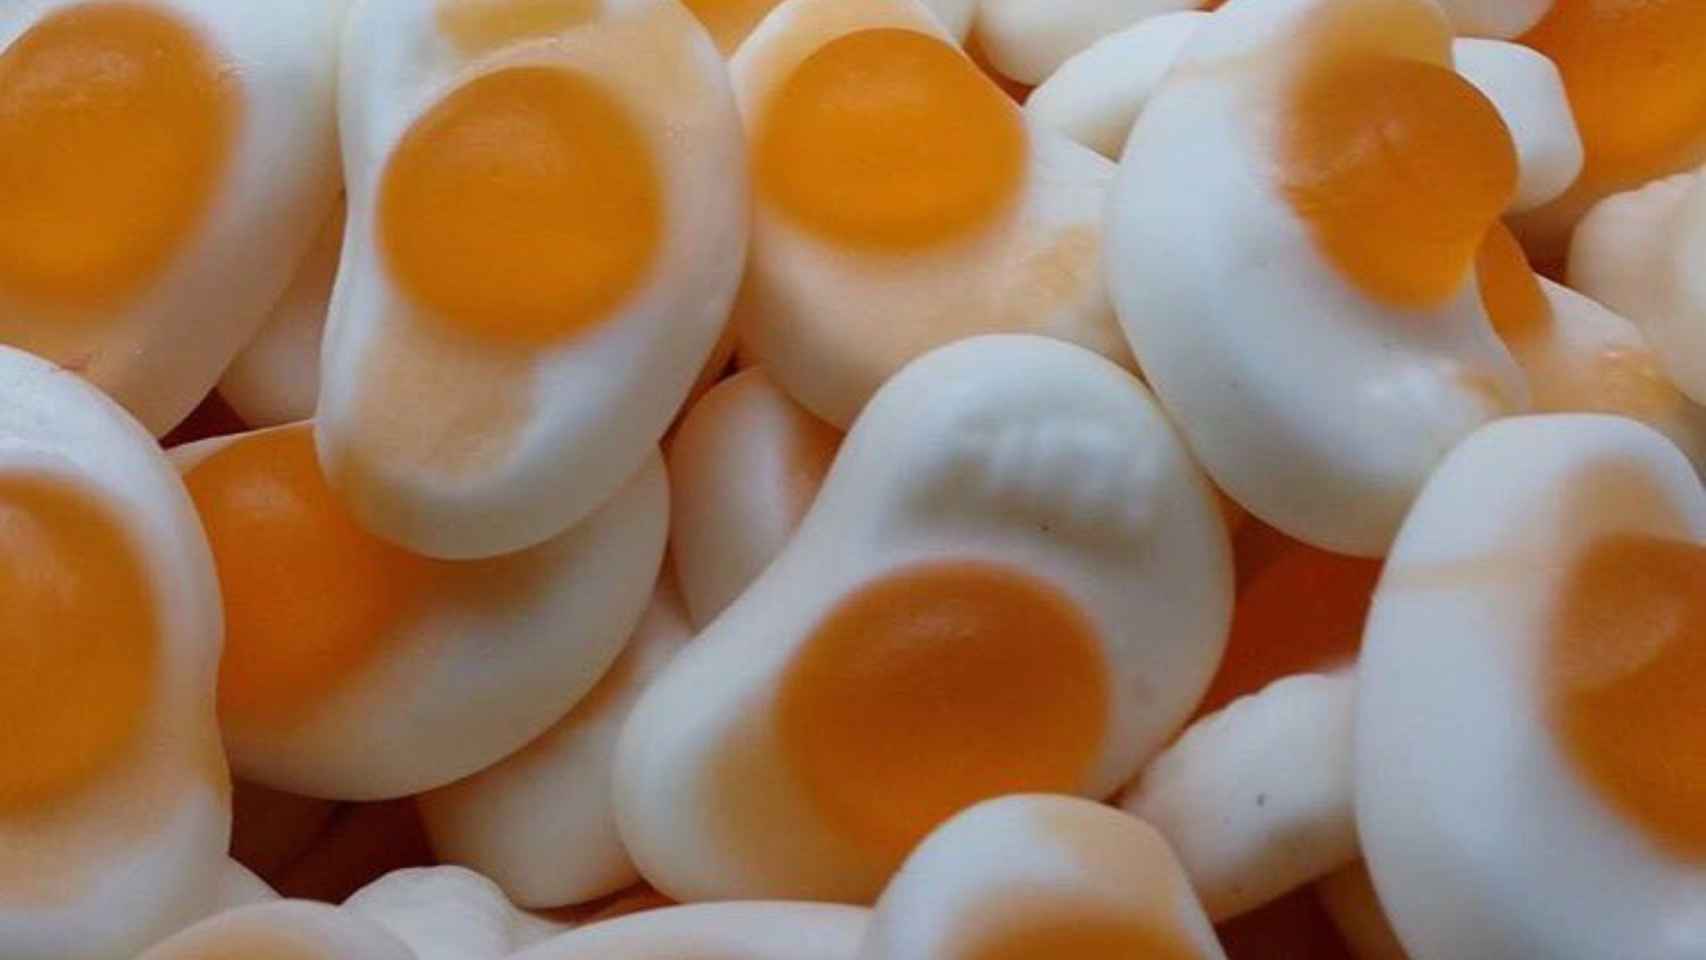 Gominolas con forma de huevos fritos.